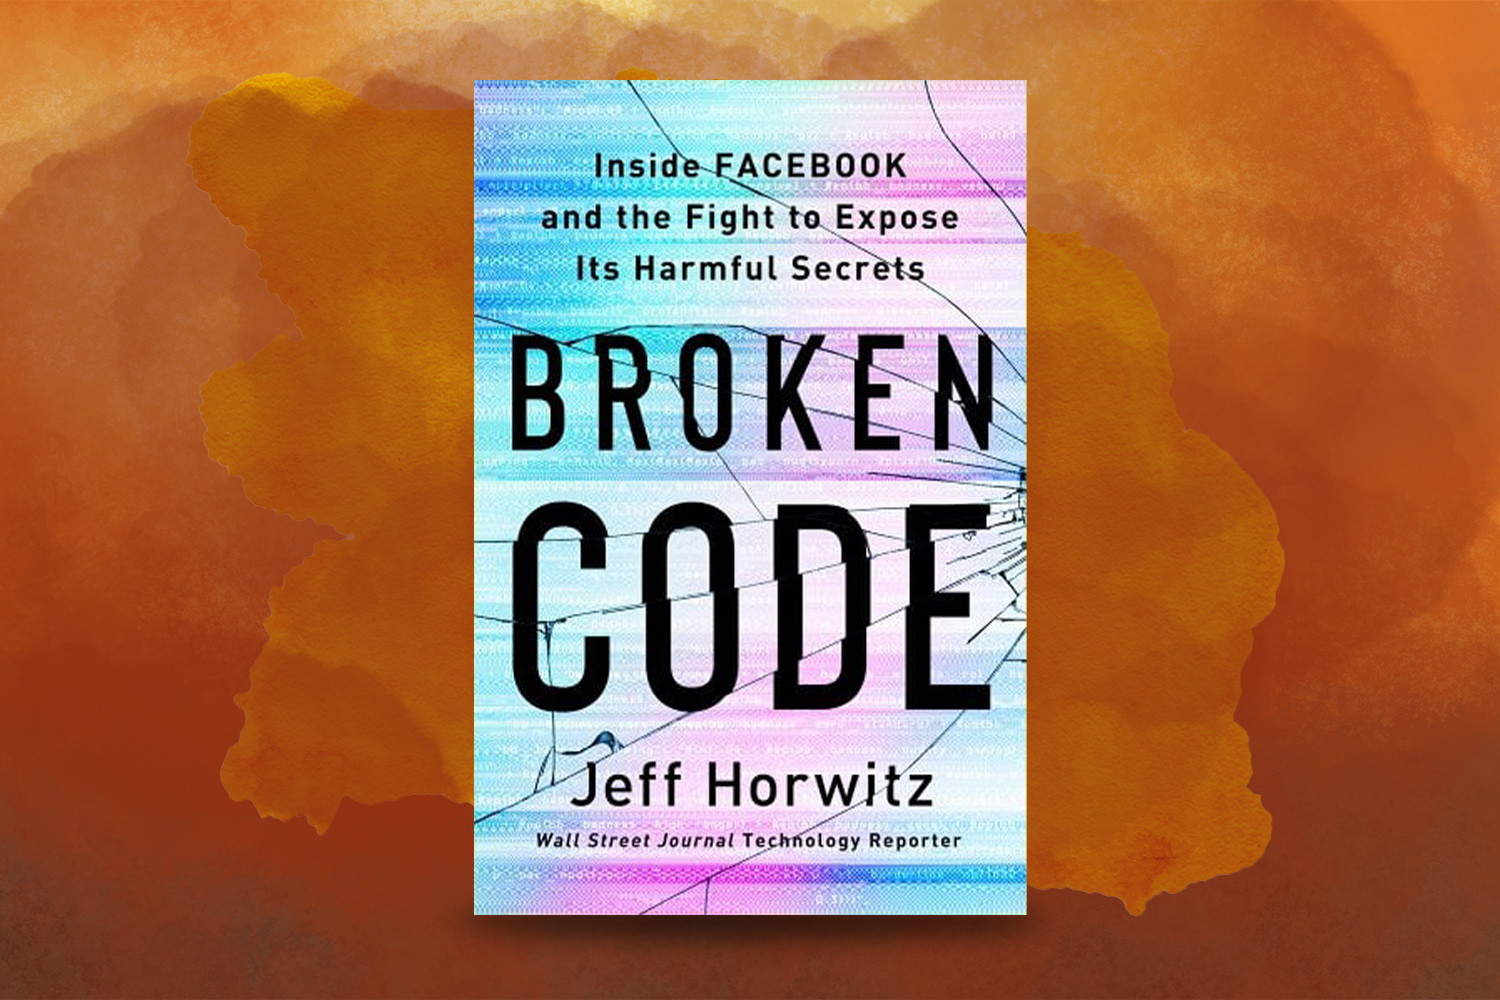 Jeff Horwitz, Broken Code